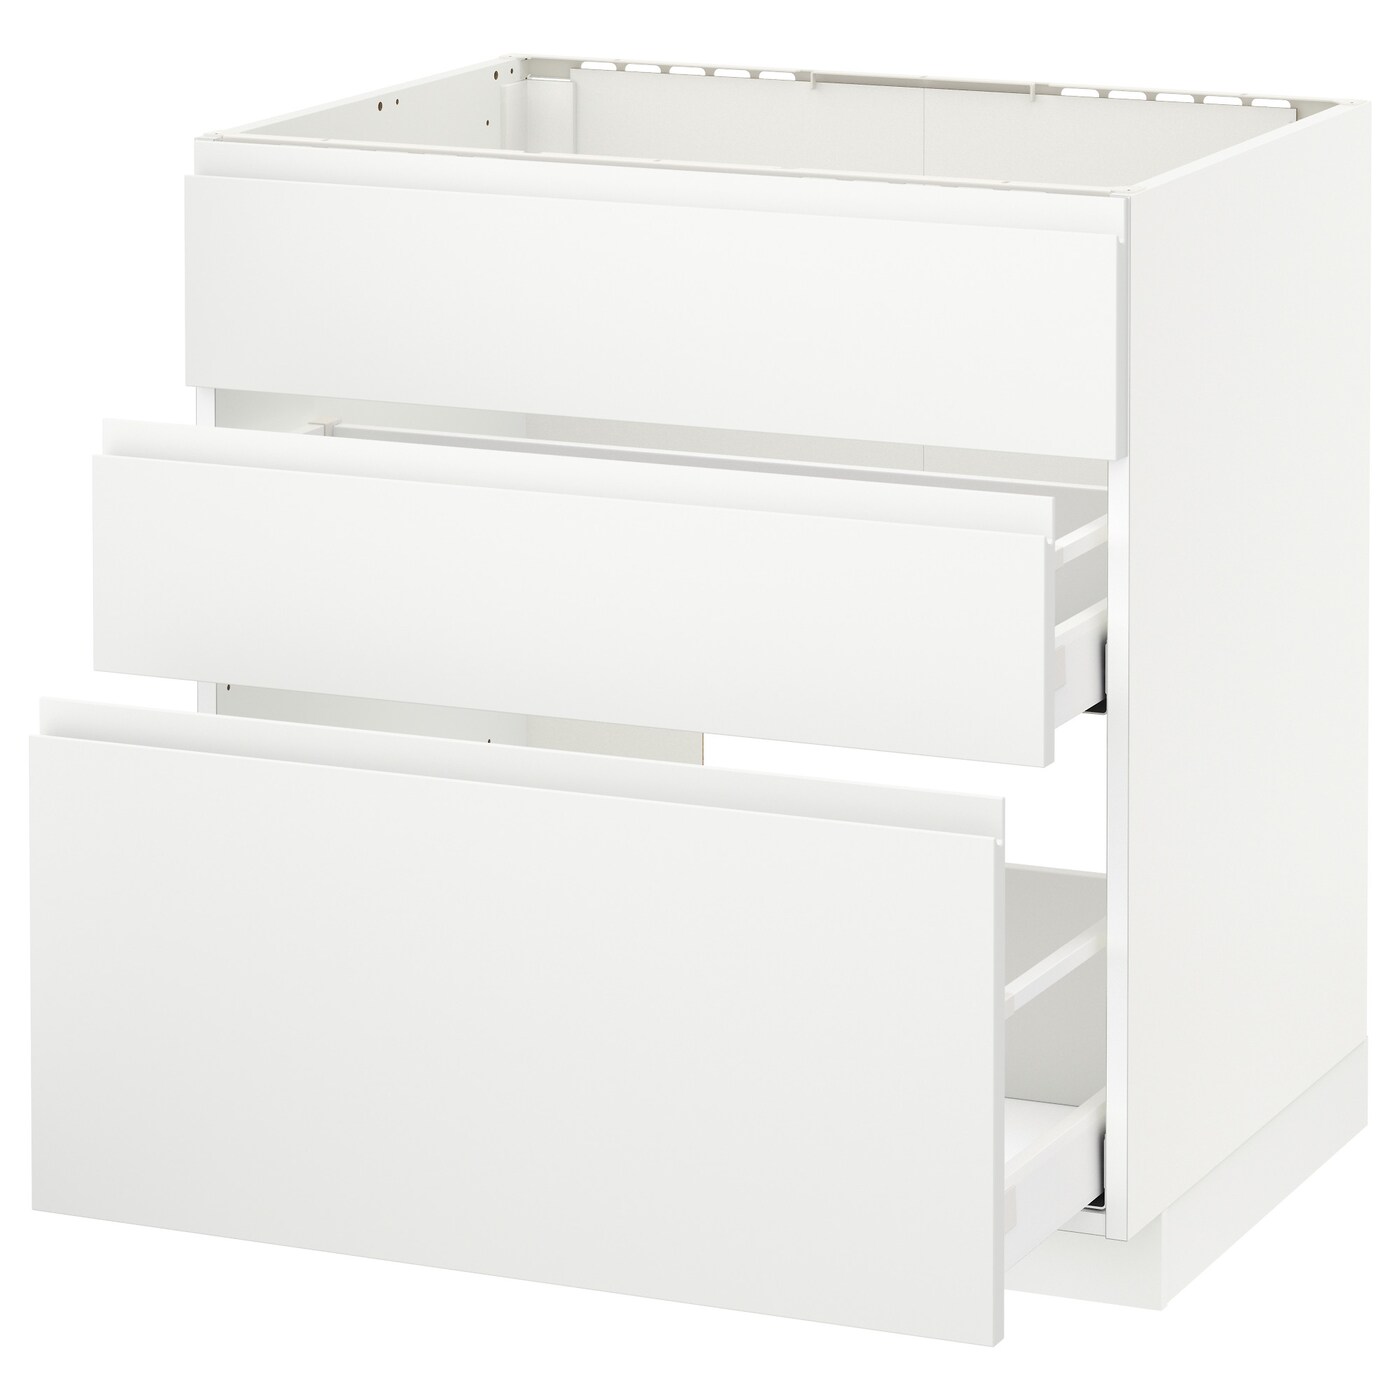 Напольный кухонный шкаф  - IKEA METOD MAXIMERA, 88x62,1x80см, белый, МЕТОД МАКСИМЕРА ИКЕА